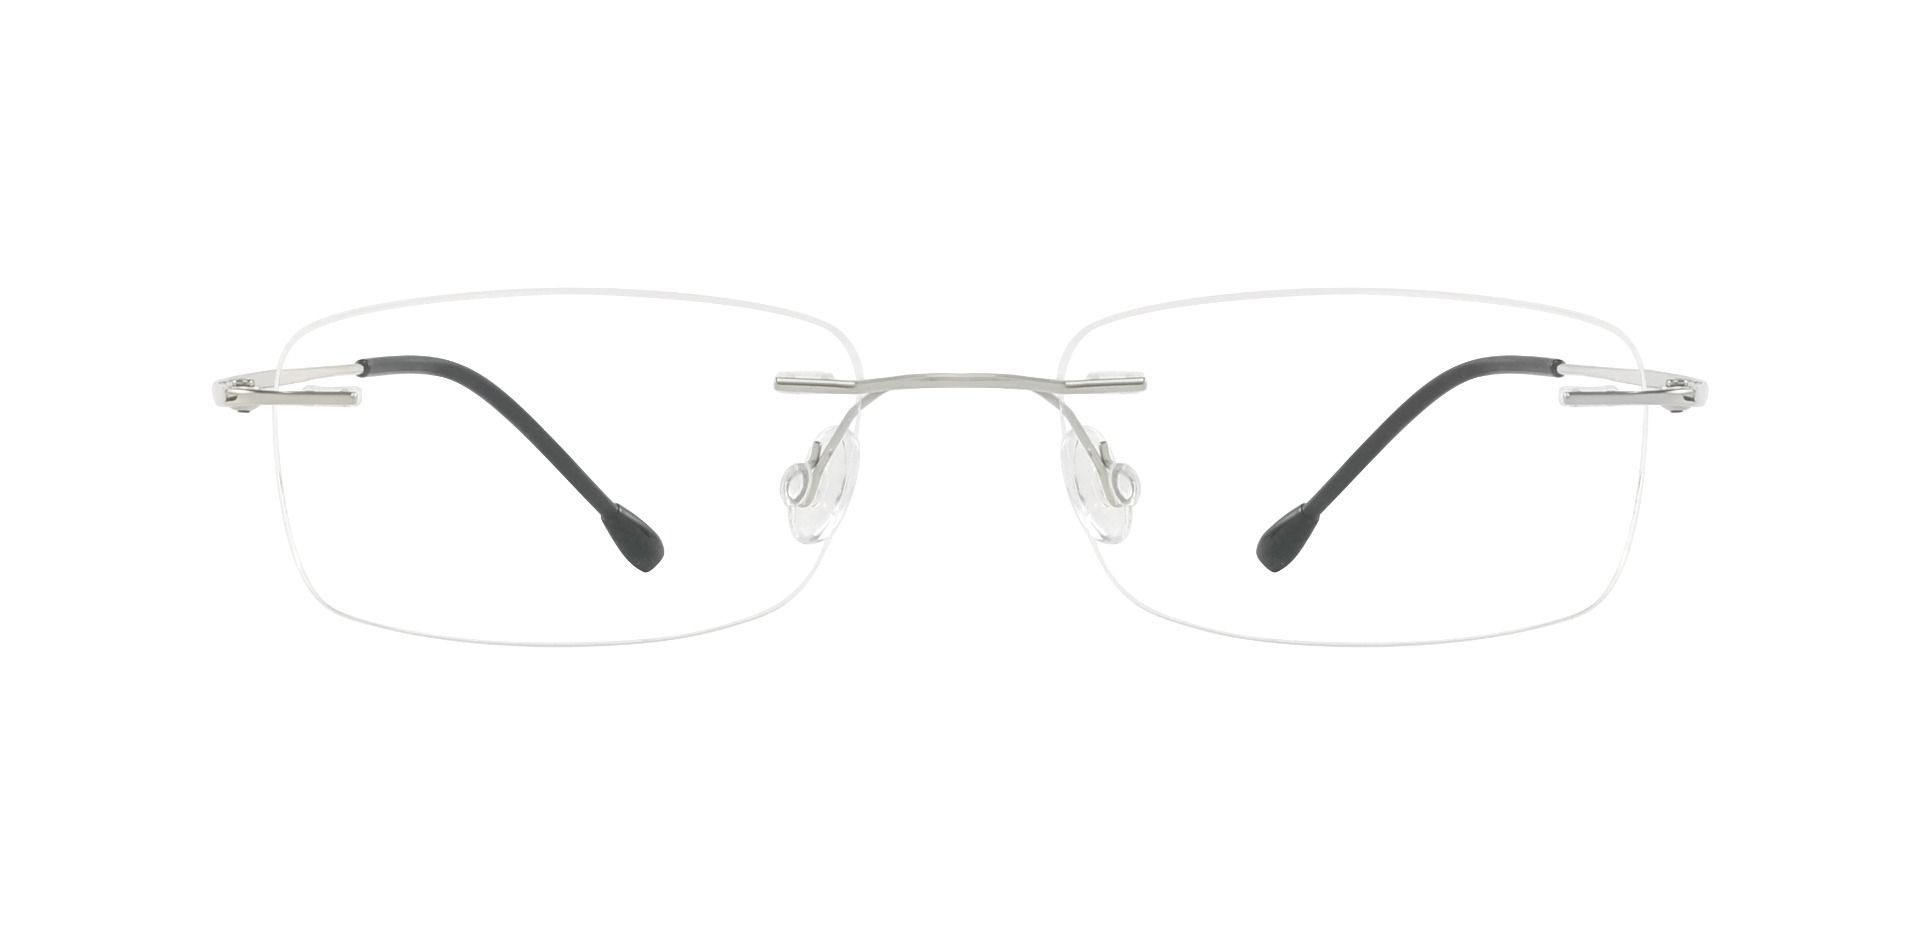 Marsh Rimless Prescription Glasses - Silver | Men's Eyeglasses | Payne ...